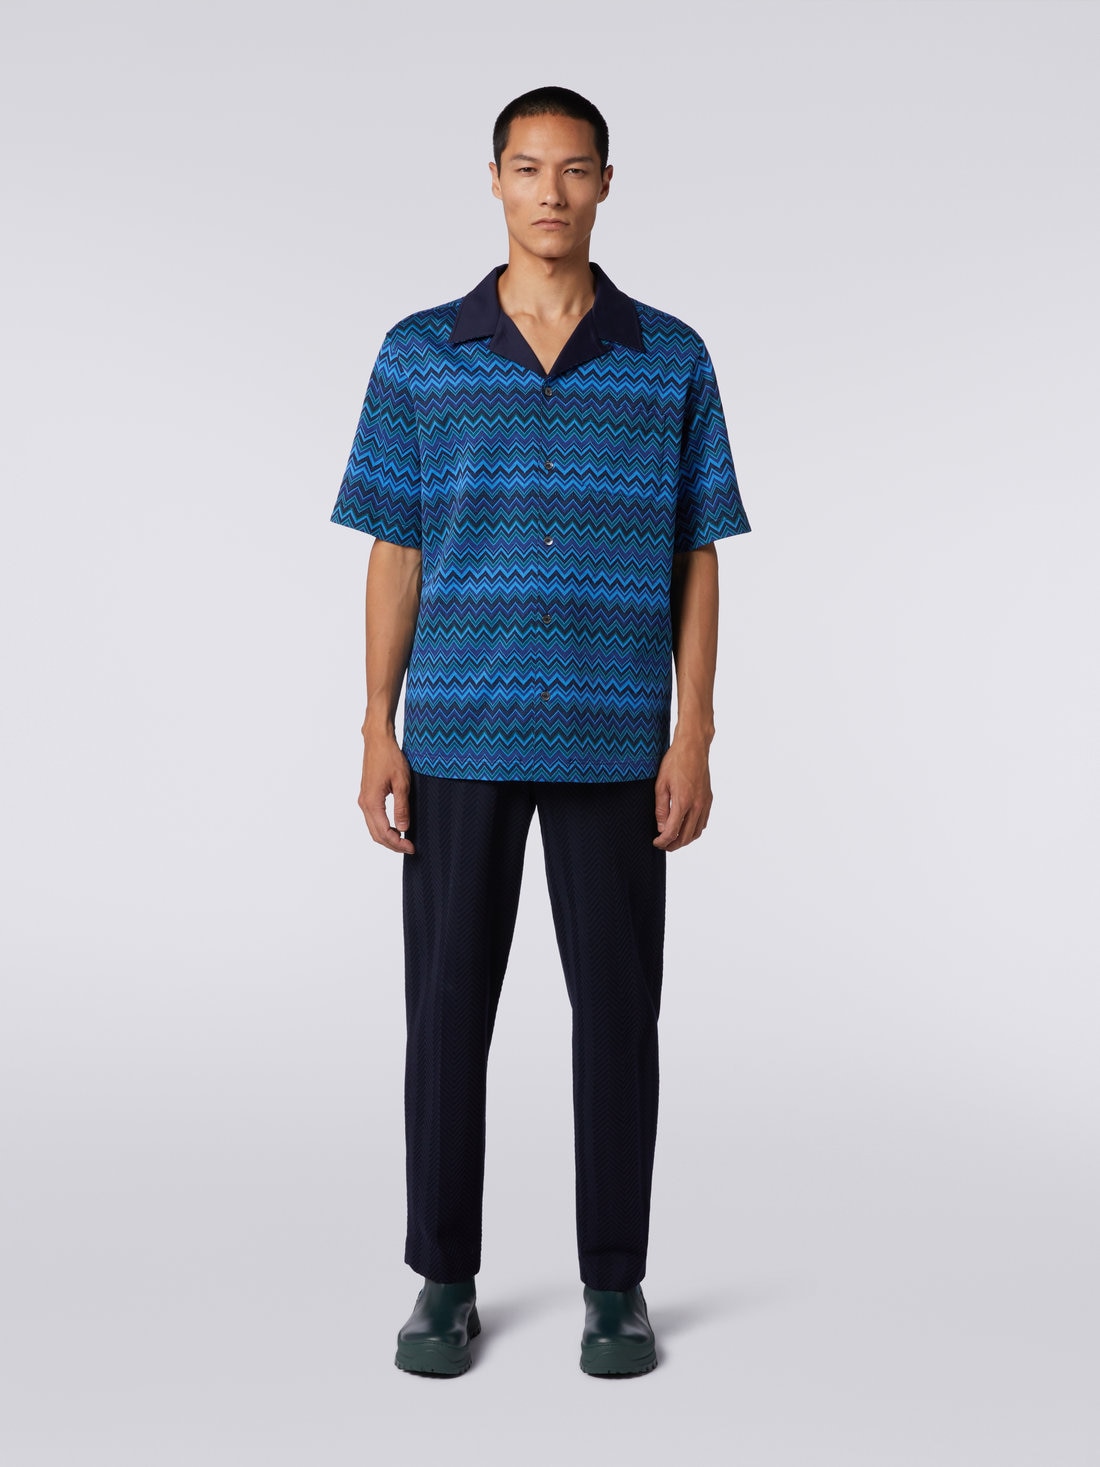 Short-sleeved jacquard knit cotton jersey shirt, Blue - US23WJ0BBJ00BFSM8Z5 - 1